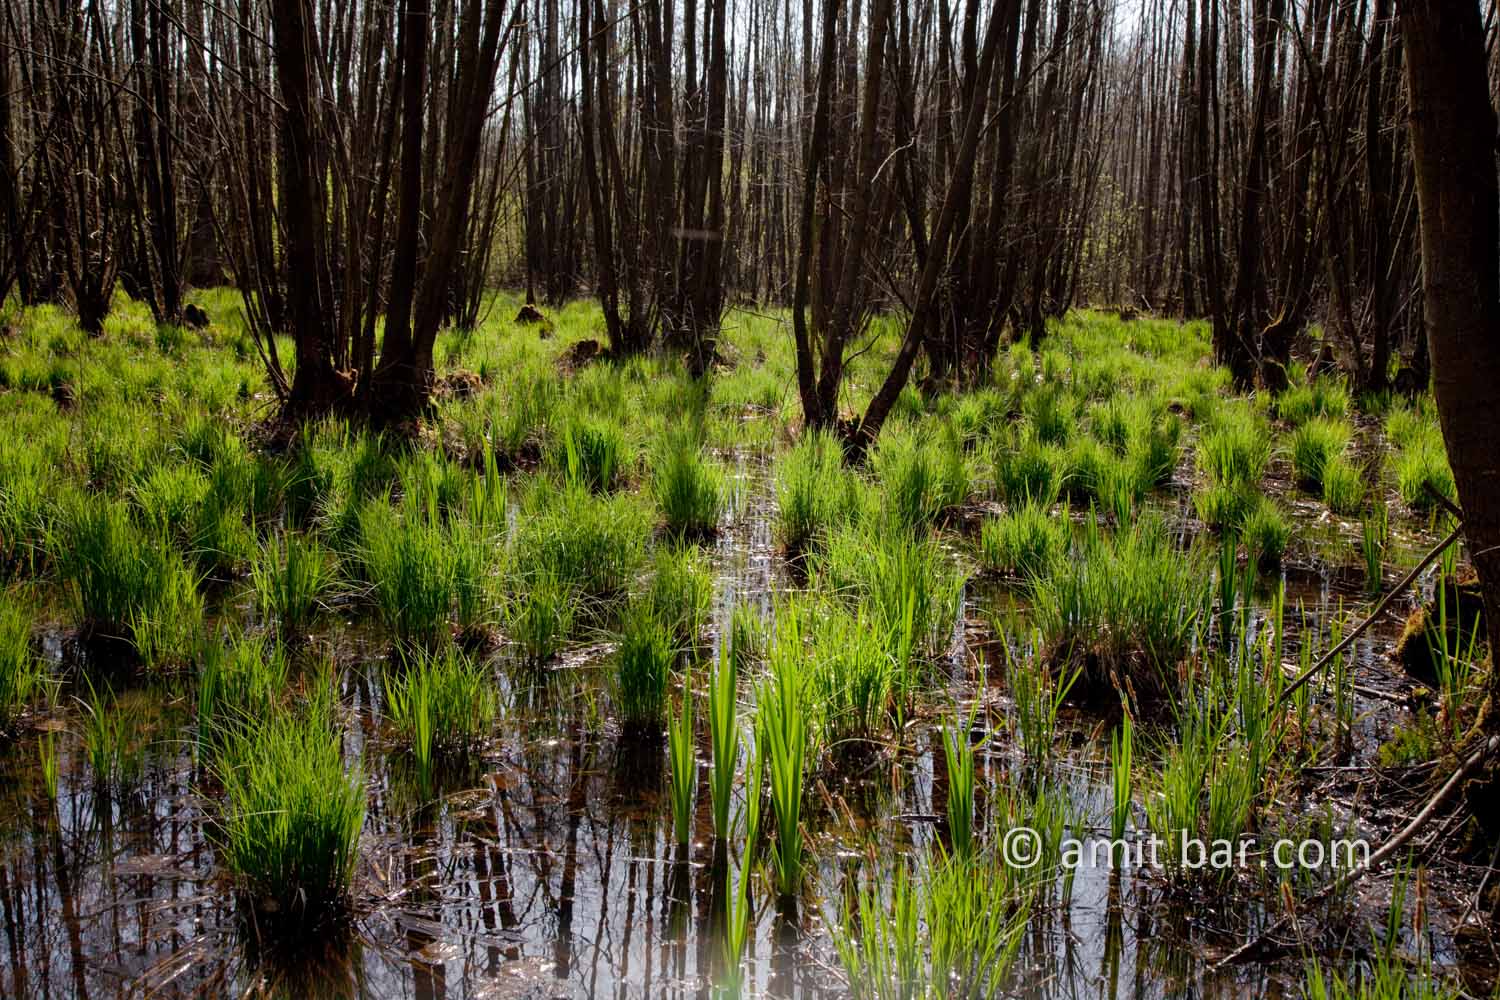 Swamp I: Swamp in Doetinchem, The Netherlands